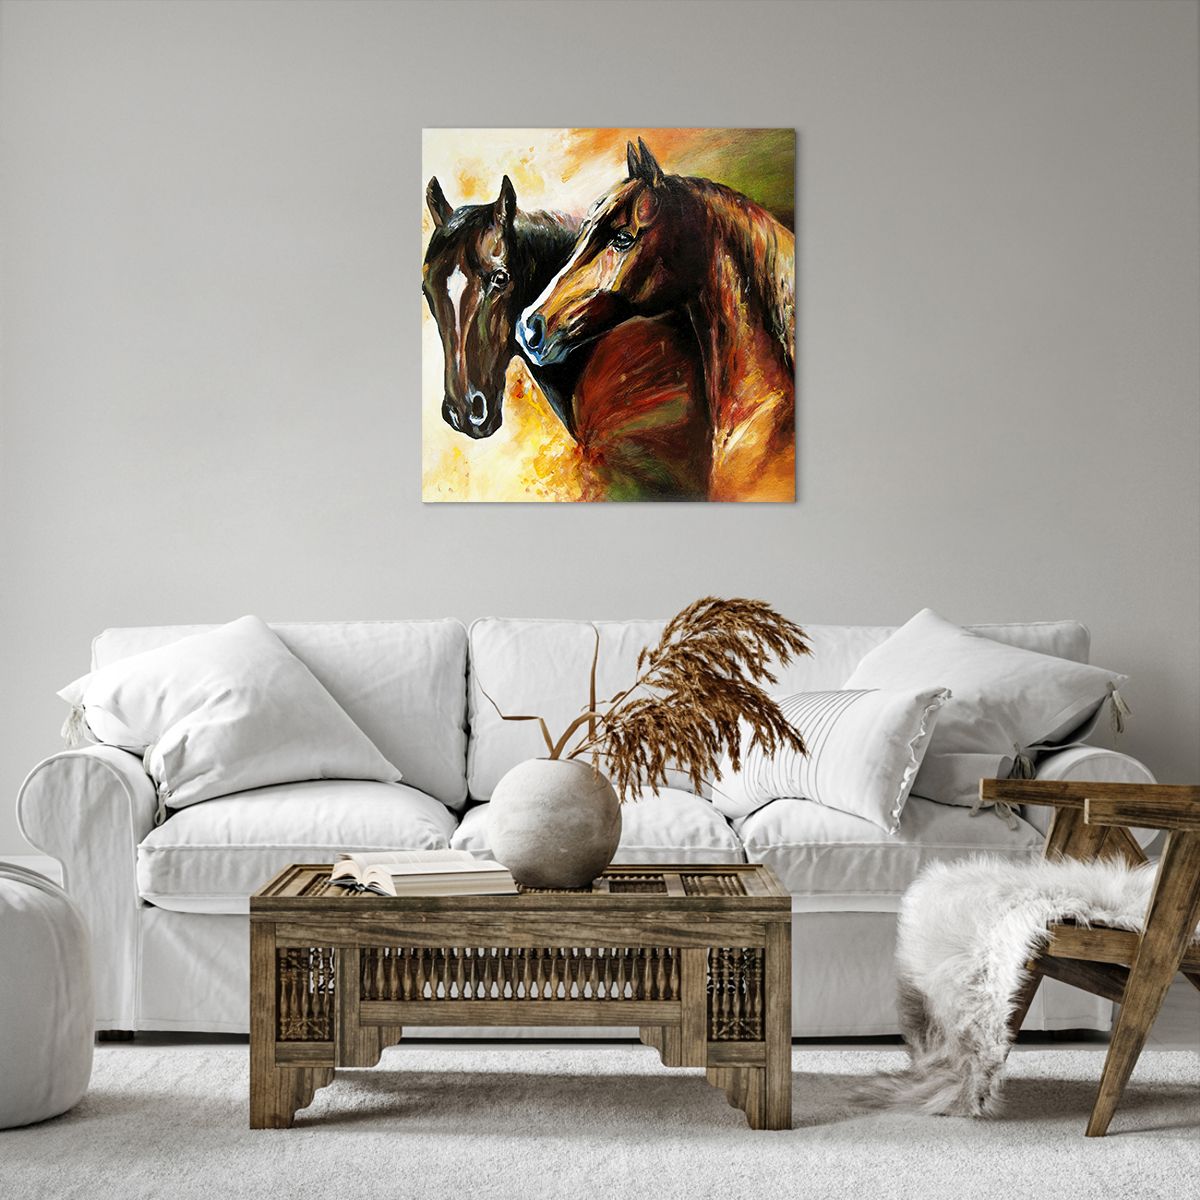 Obrazy na płótnie Zwierzęta, Obrazy na płótnie Konie, Obrazy na płótnie Natura, Obrazy na płótnie Sztuka, Obrazy na płótnie Abstrakcja